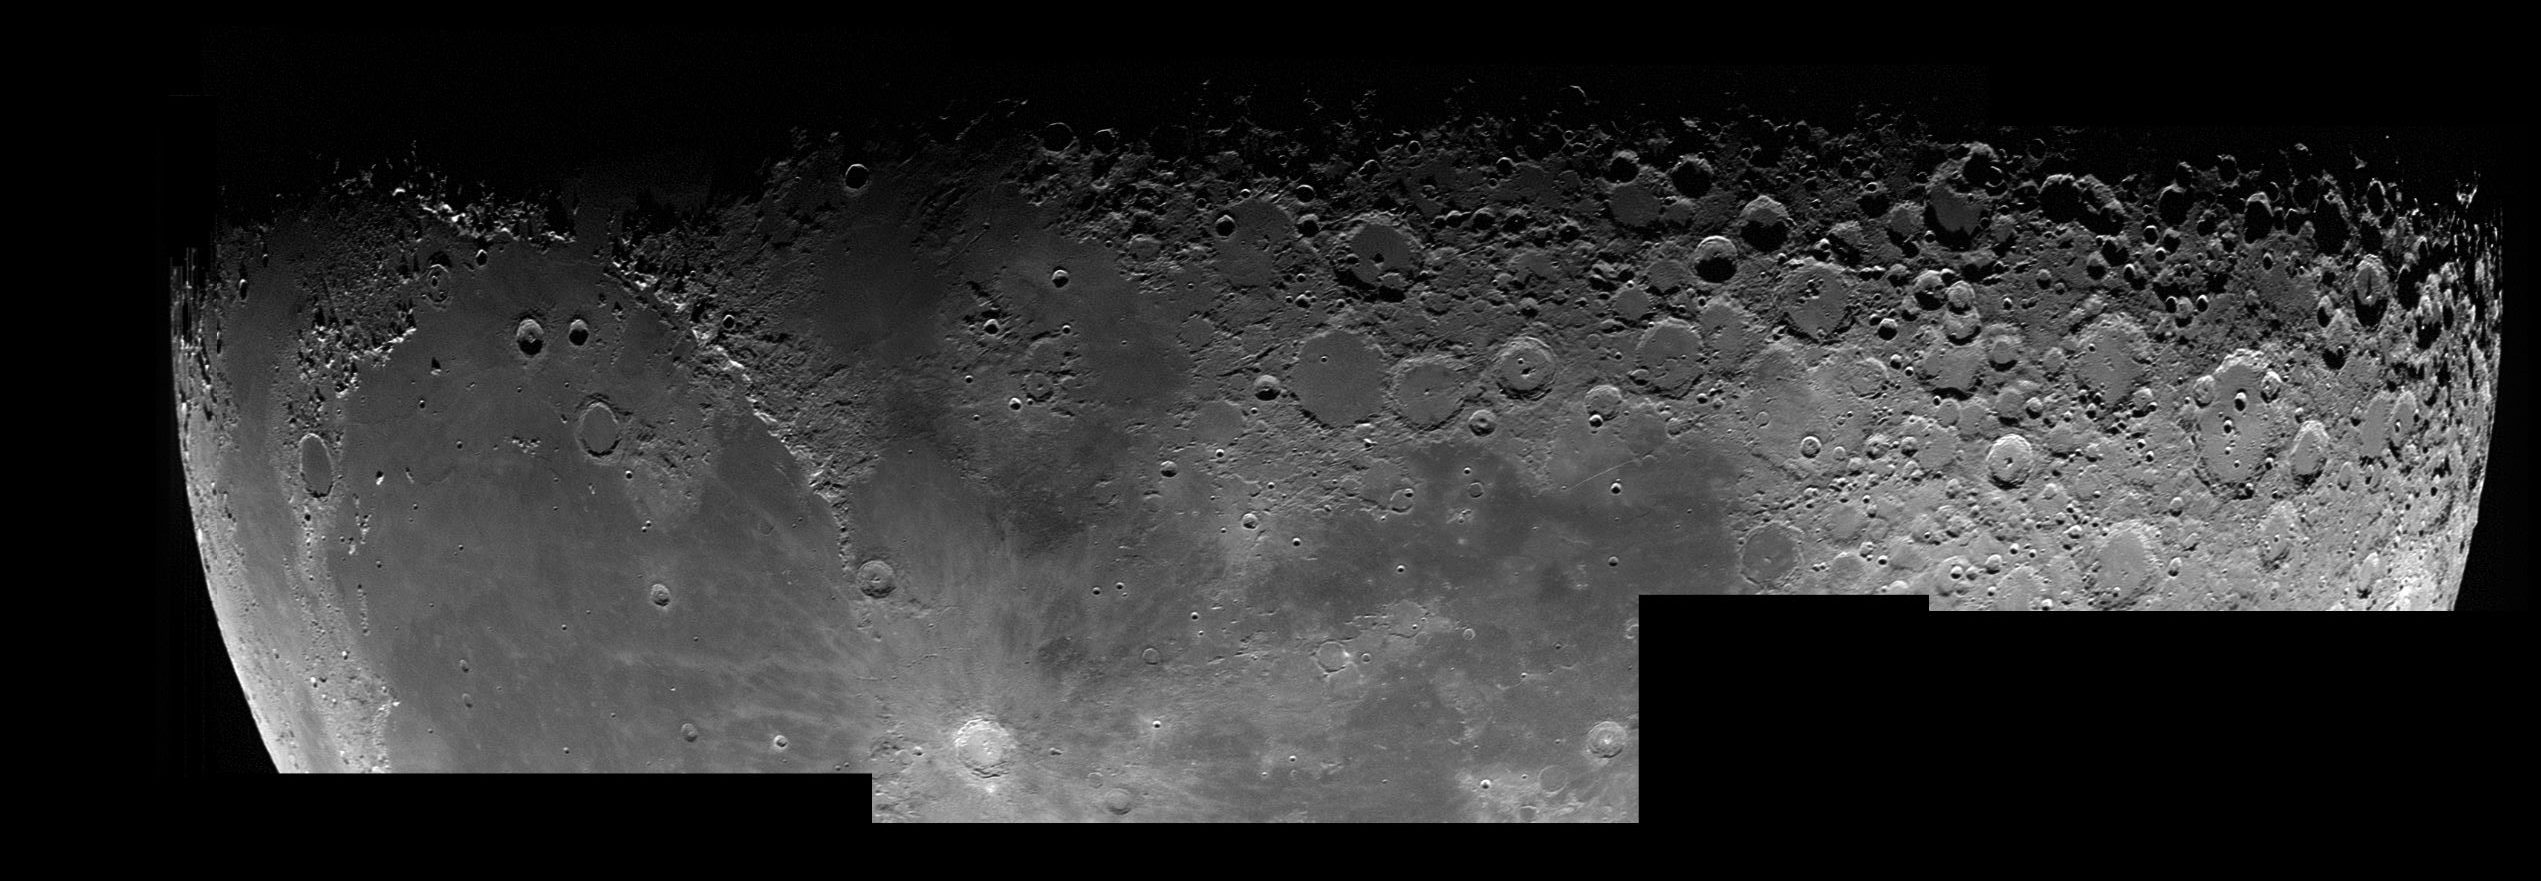 Космический аппарат НАСА «Люси» сделал три очень подробных снимка Луны